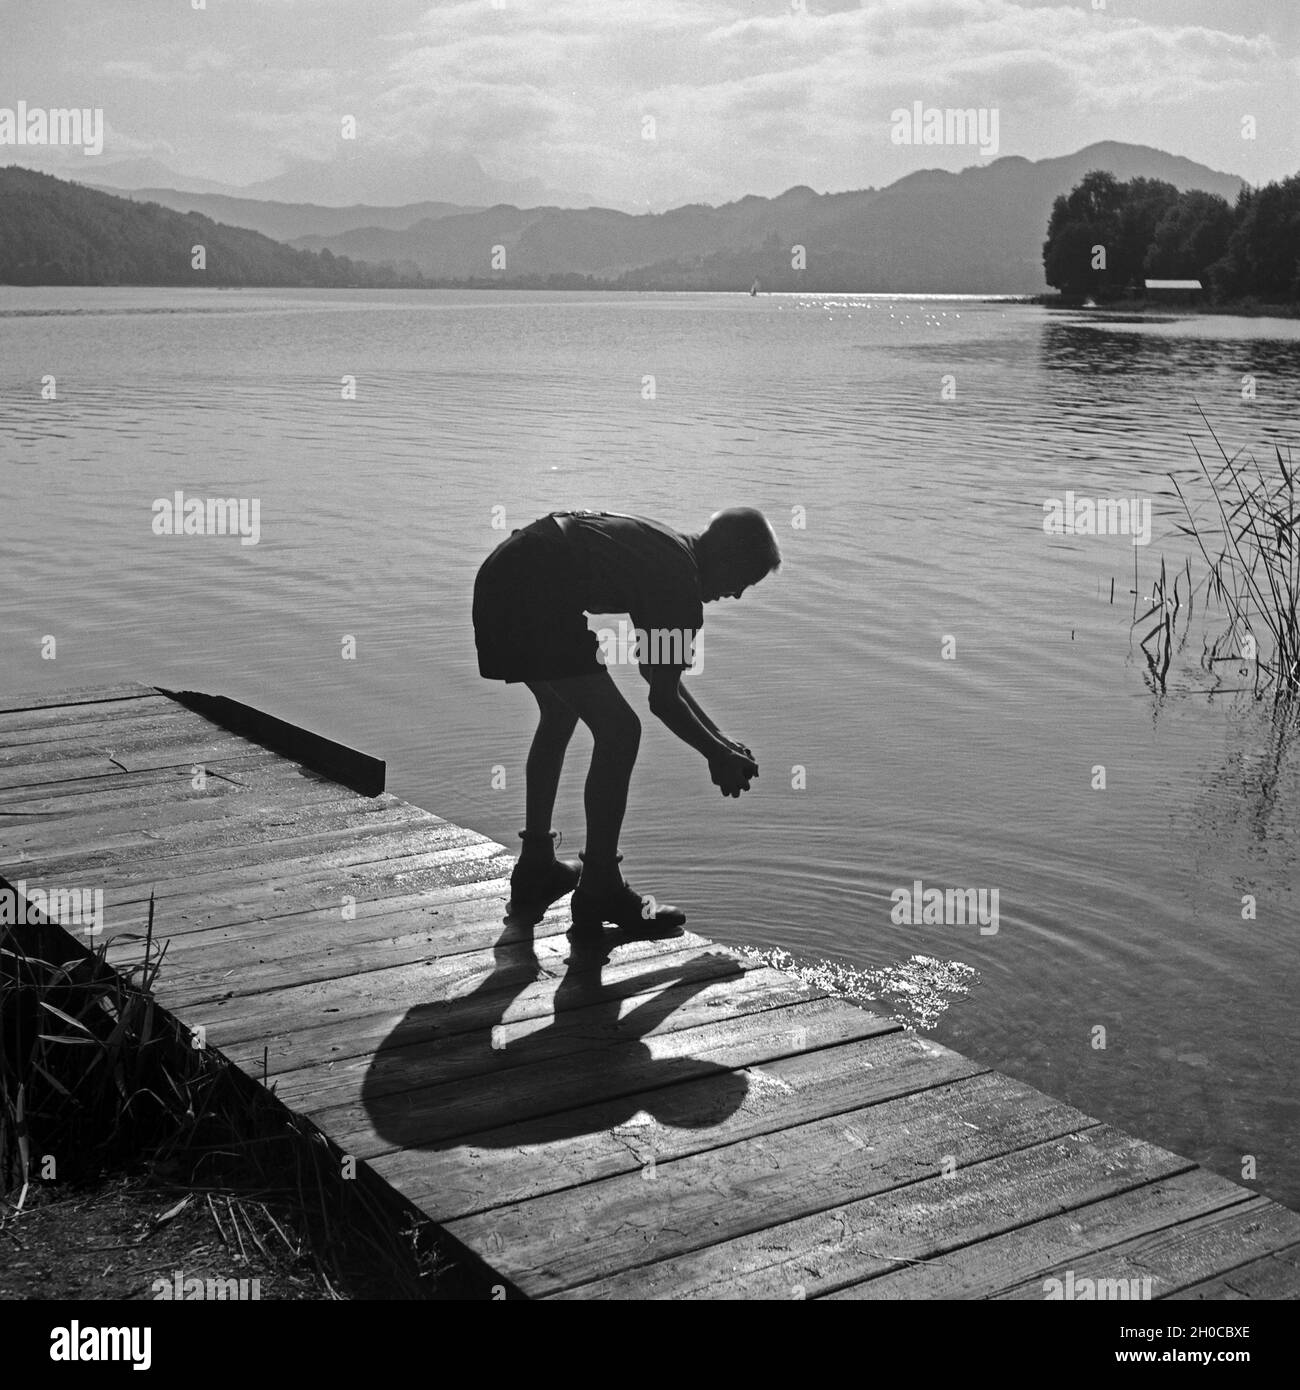 Ein Hitlerjunge Beim Händewaschen in Einem See Nahe Vom Hitlerjugend Lager Österreich 1930er Jahre. Ein Hitler-Jugend, seine Hände zu waschen, auf einem Holzsteg am See in der Nähe von Hitler Jugendcamp, Österreich der 1930er Jahre. Stockfoto